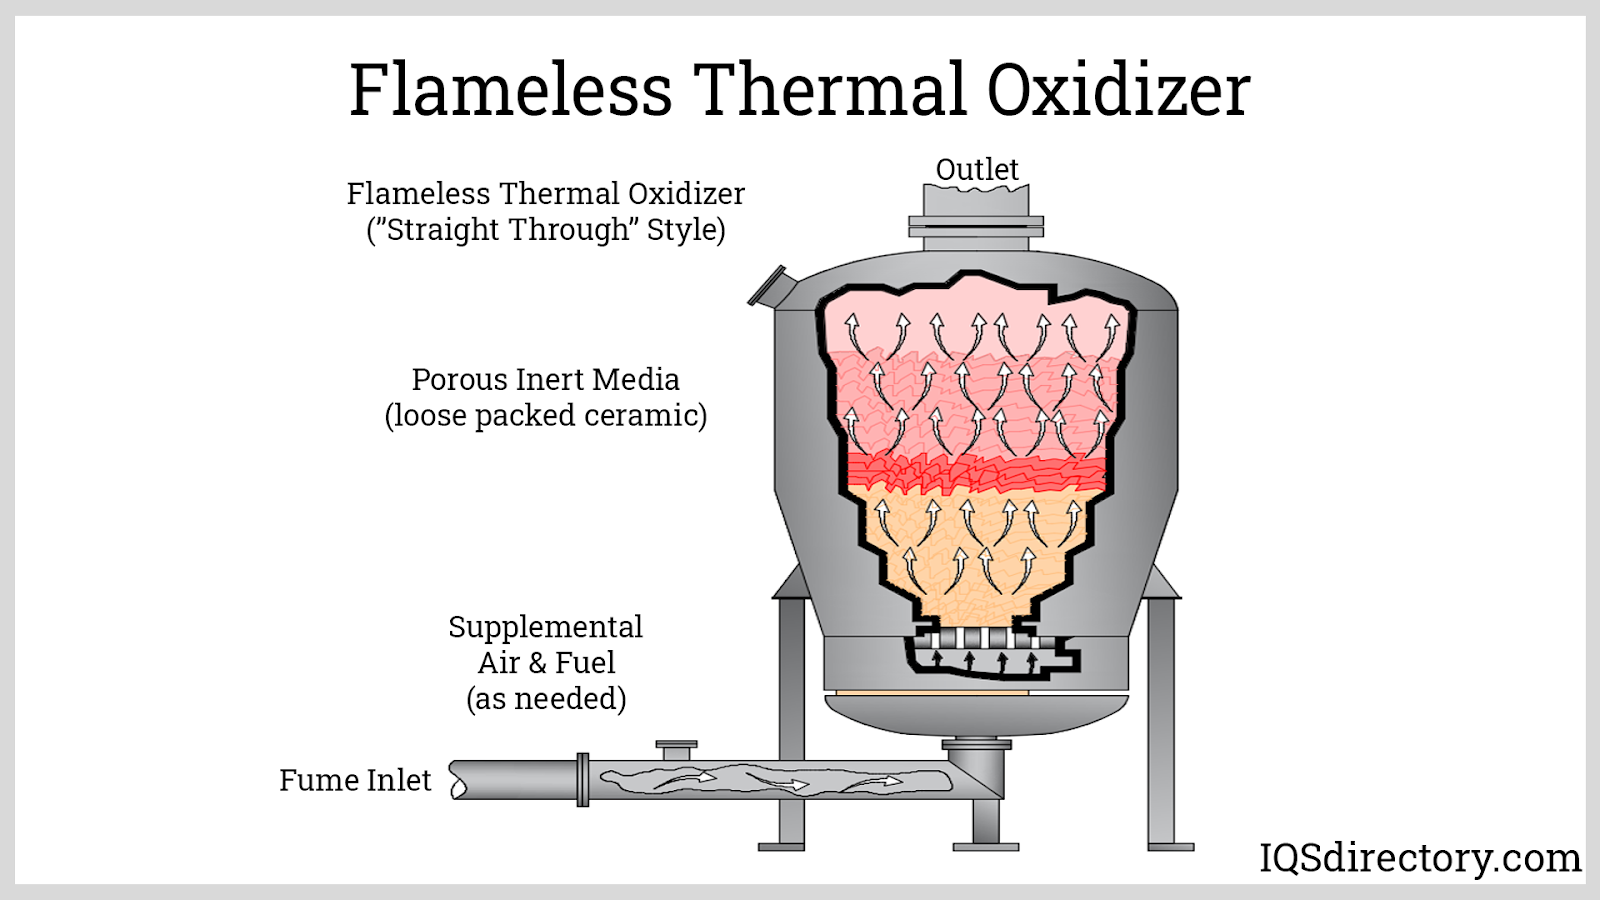 Oxidizers